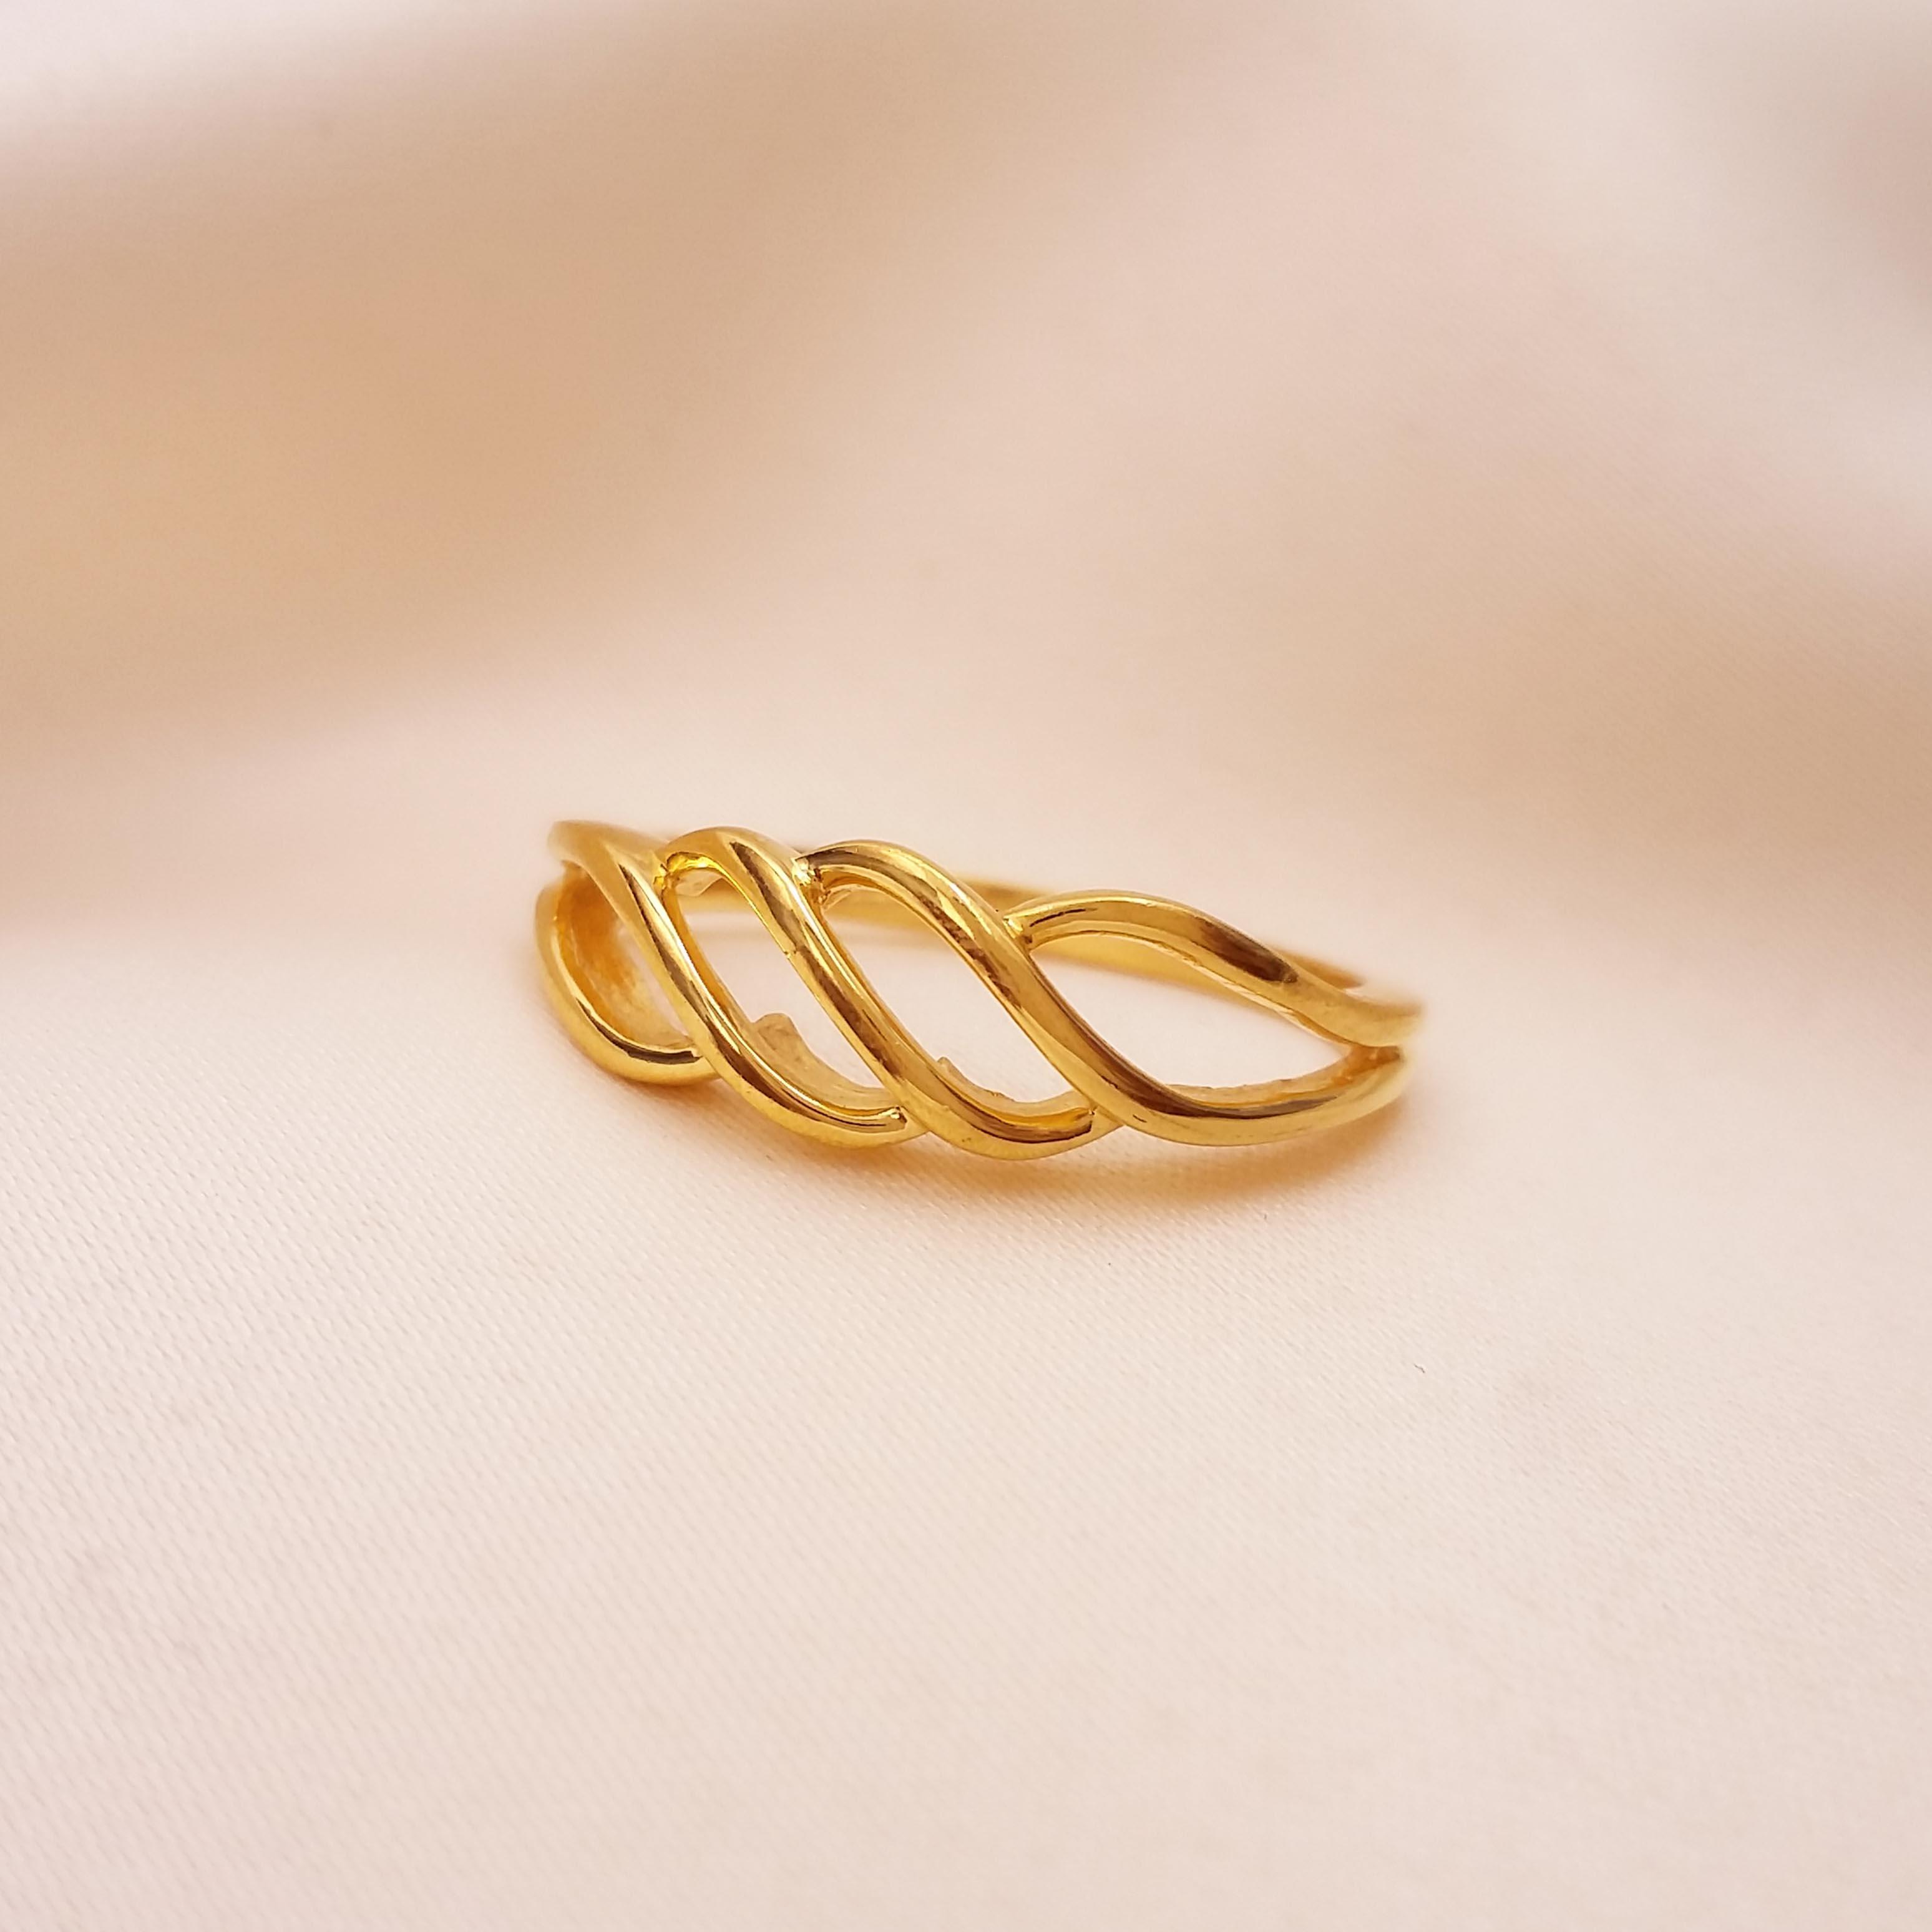 Buy The Golden Vein Ring 22 KT yellow gold (3.05 gm). | Online By Giriraj Jewellers